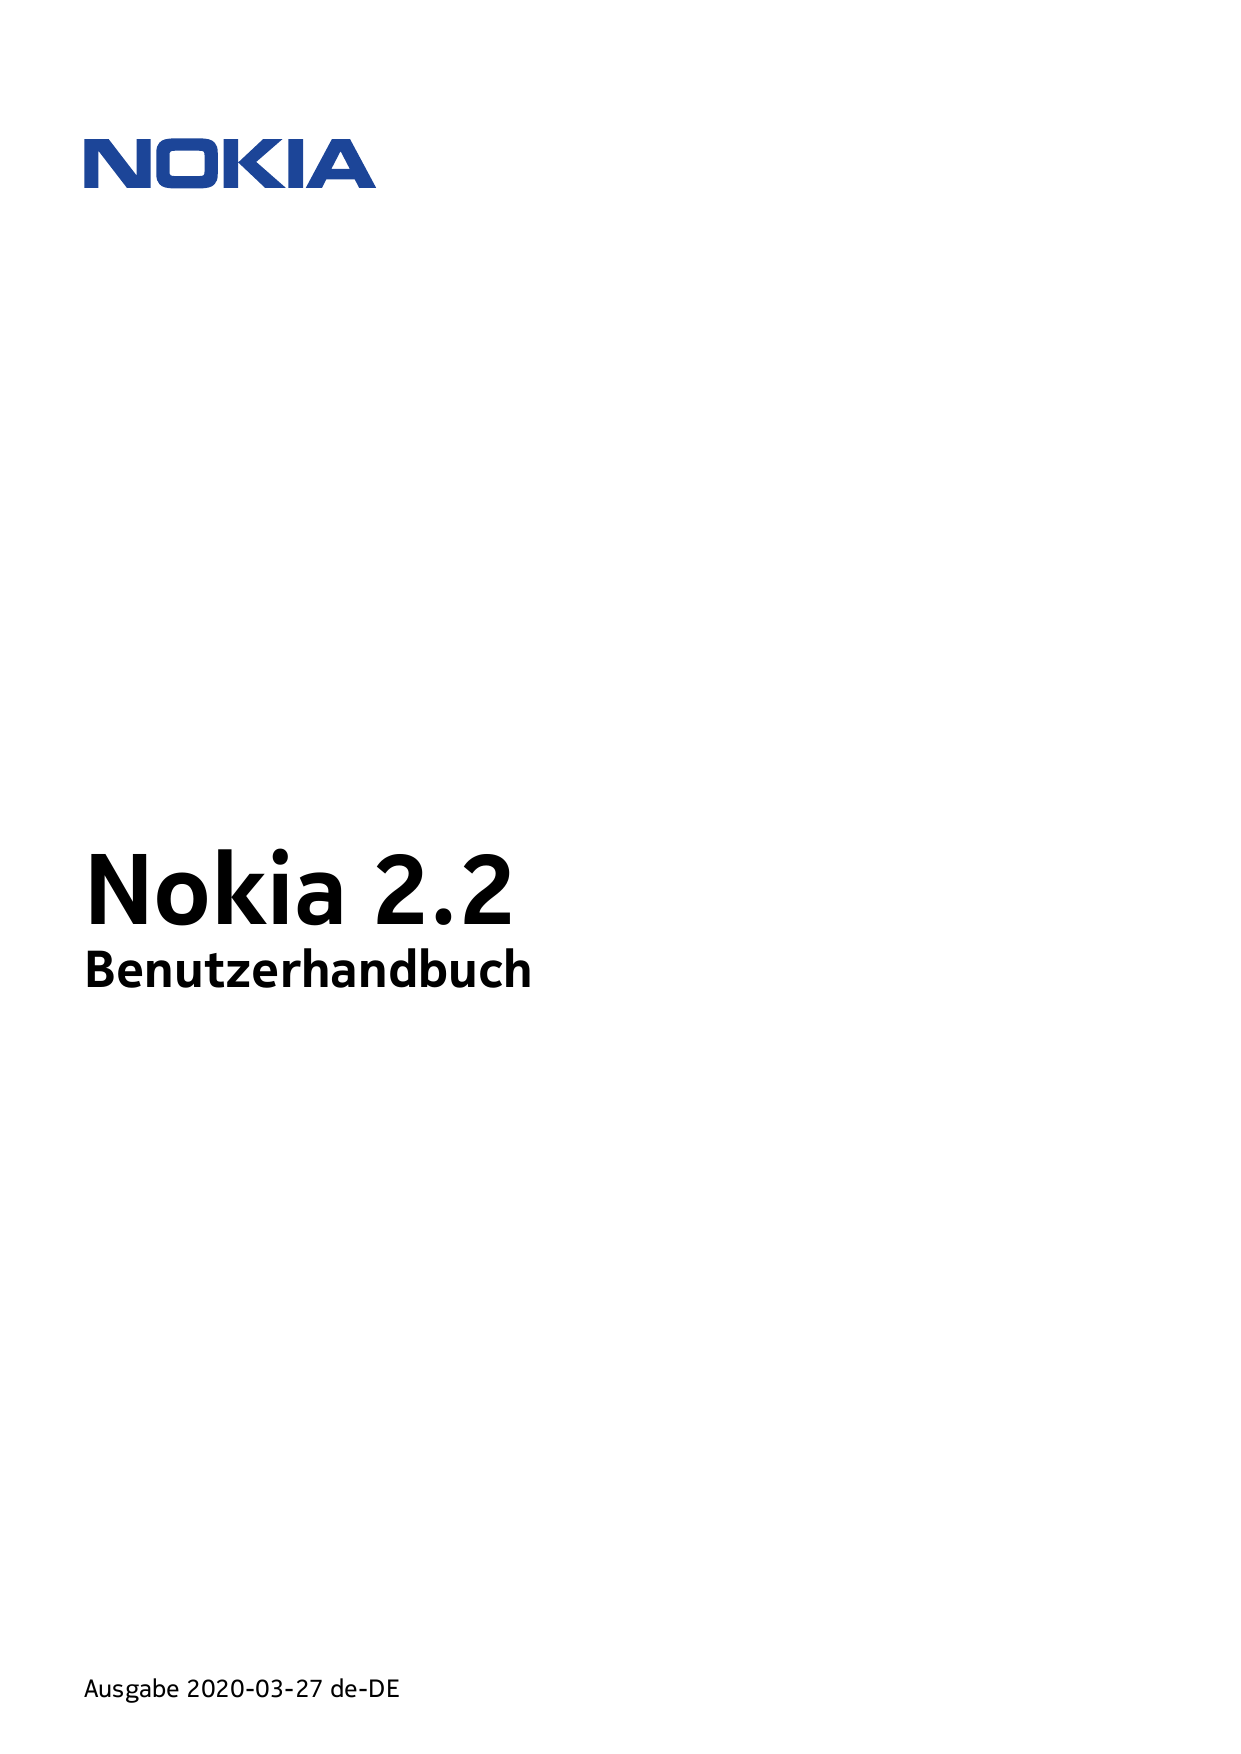 Nokia 2.2BenutzerhandbuchAusgabe 2020-03-27 de-DE